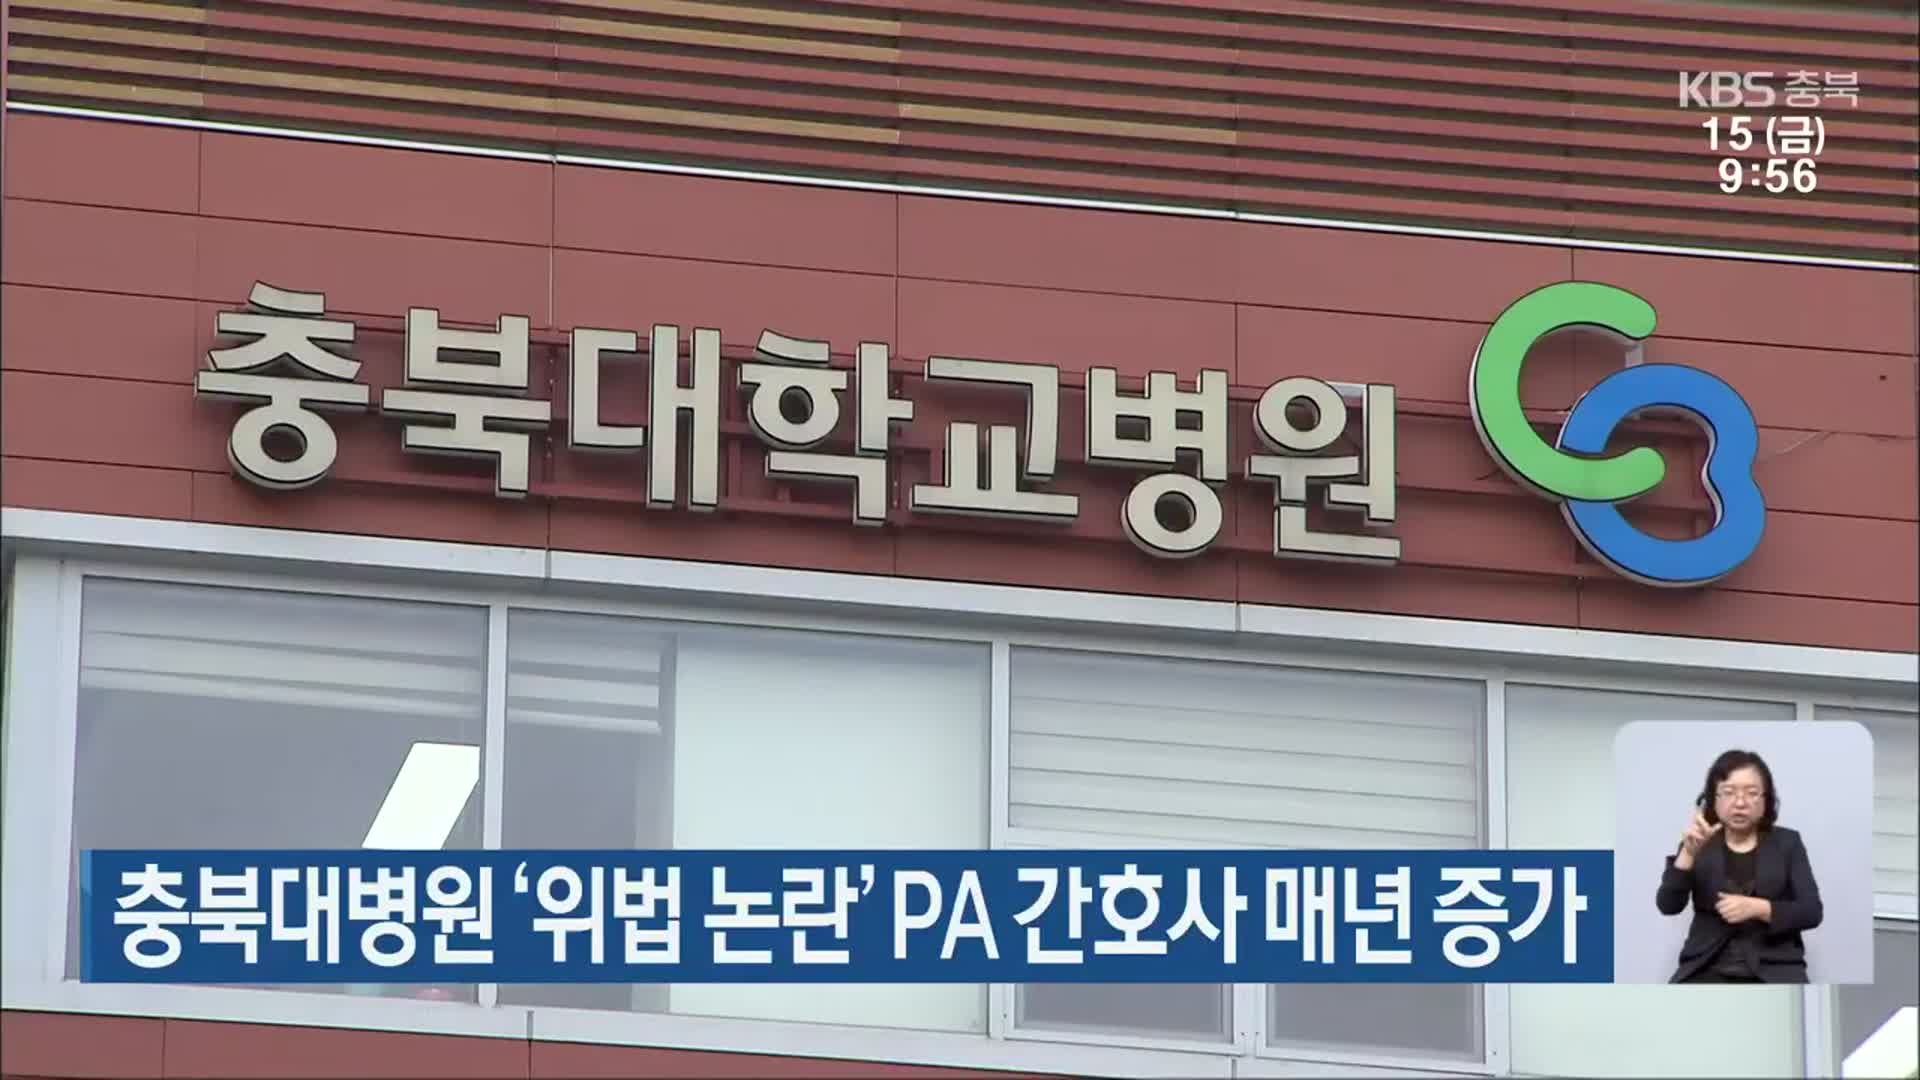 충북대병원 ‘위법 논란’ PA 간호사 매년 증가